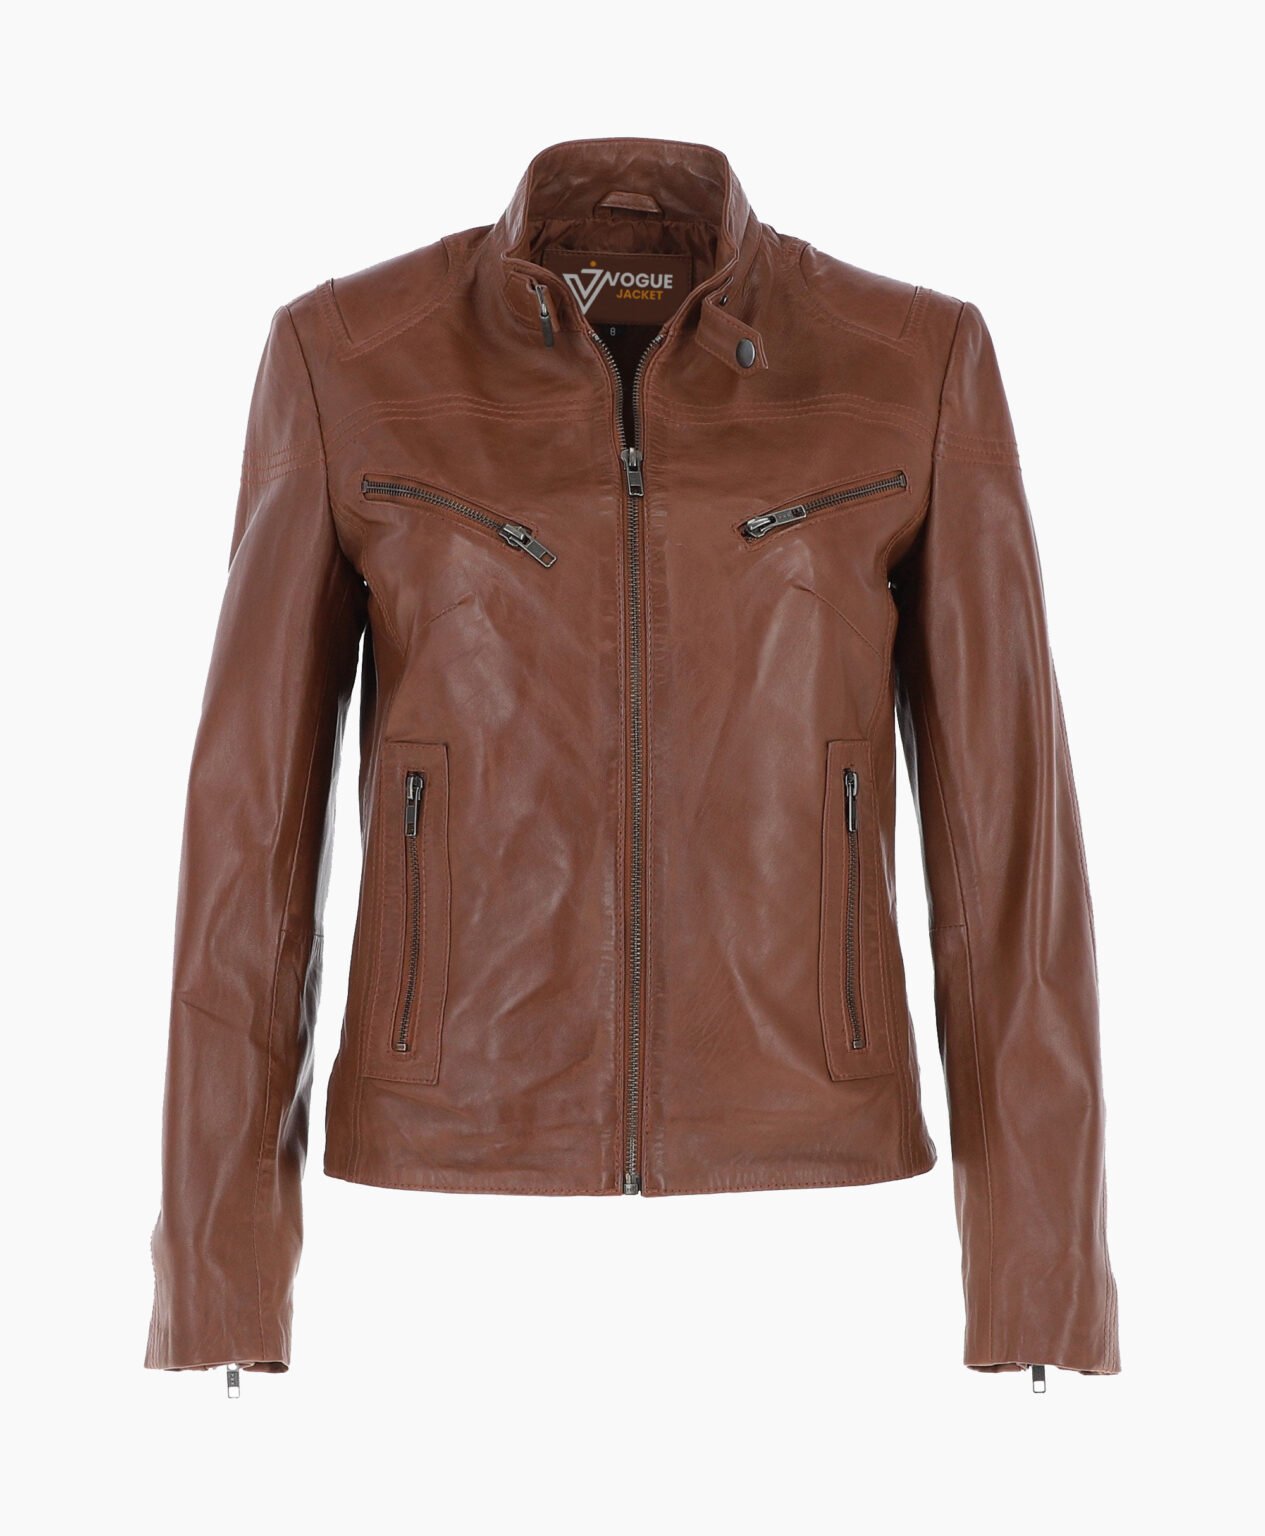 vogue-jacket-leather-biker-jacket-brown-alton-image200